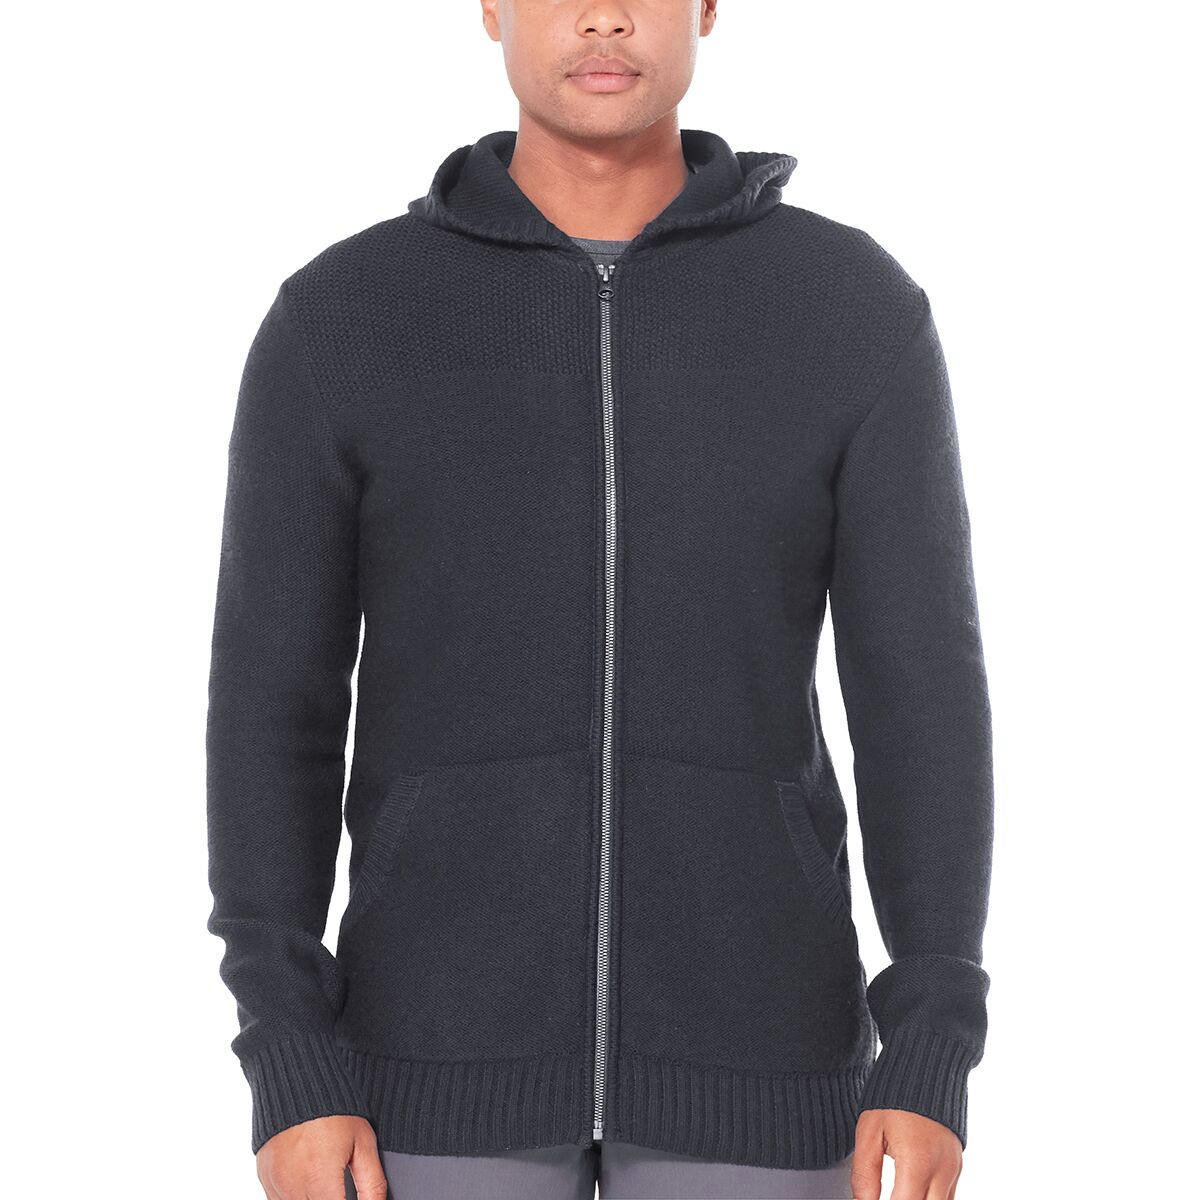 Icebreaker Waypoint Long-Sleeve Zip Hooded Sweater - Men's